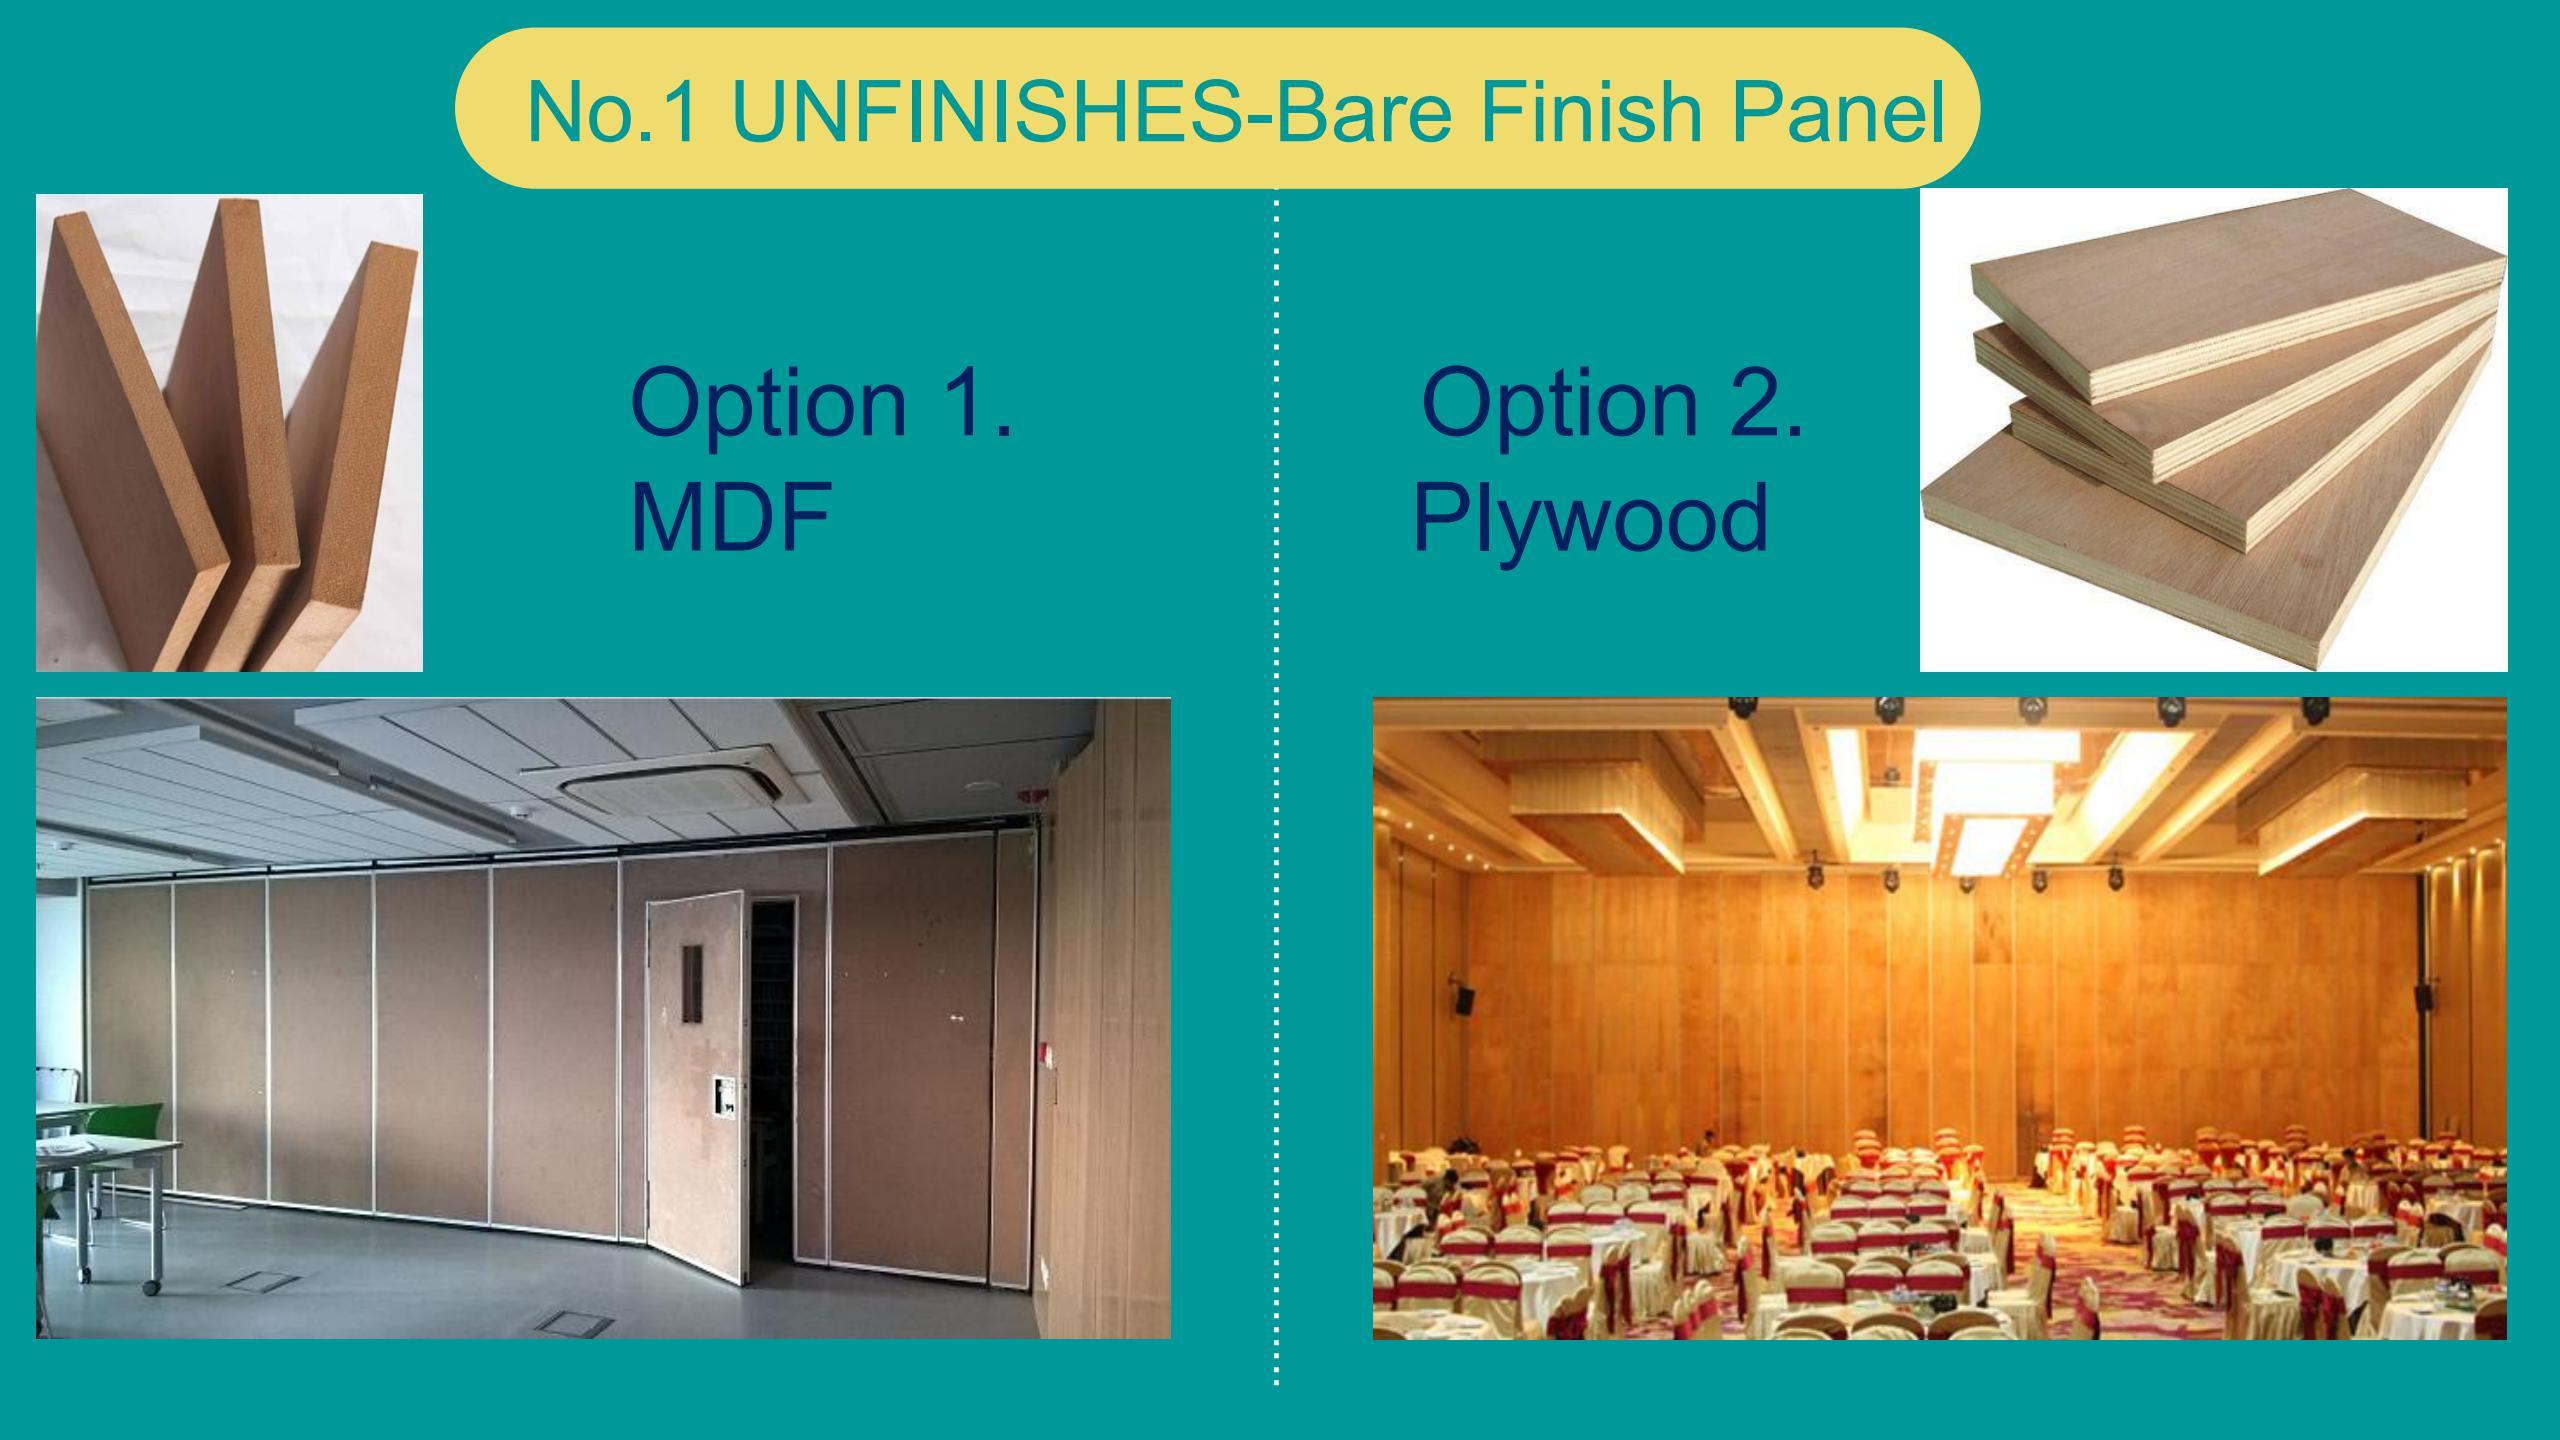 UNFINISHES-Bare Finish Panel